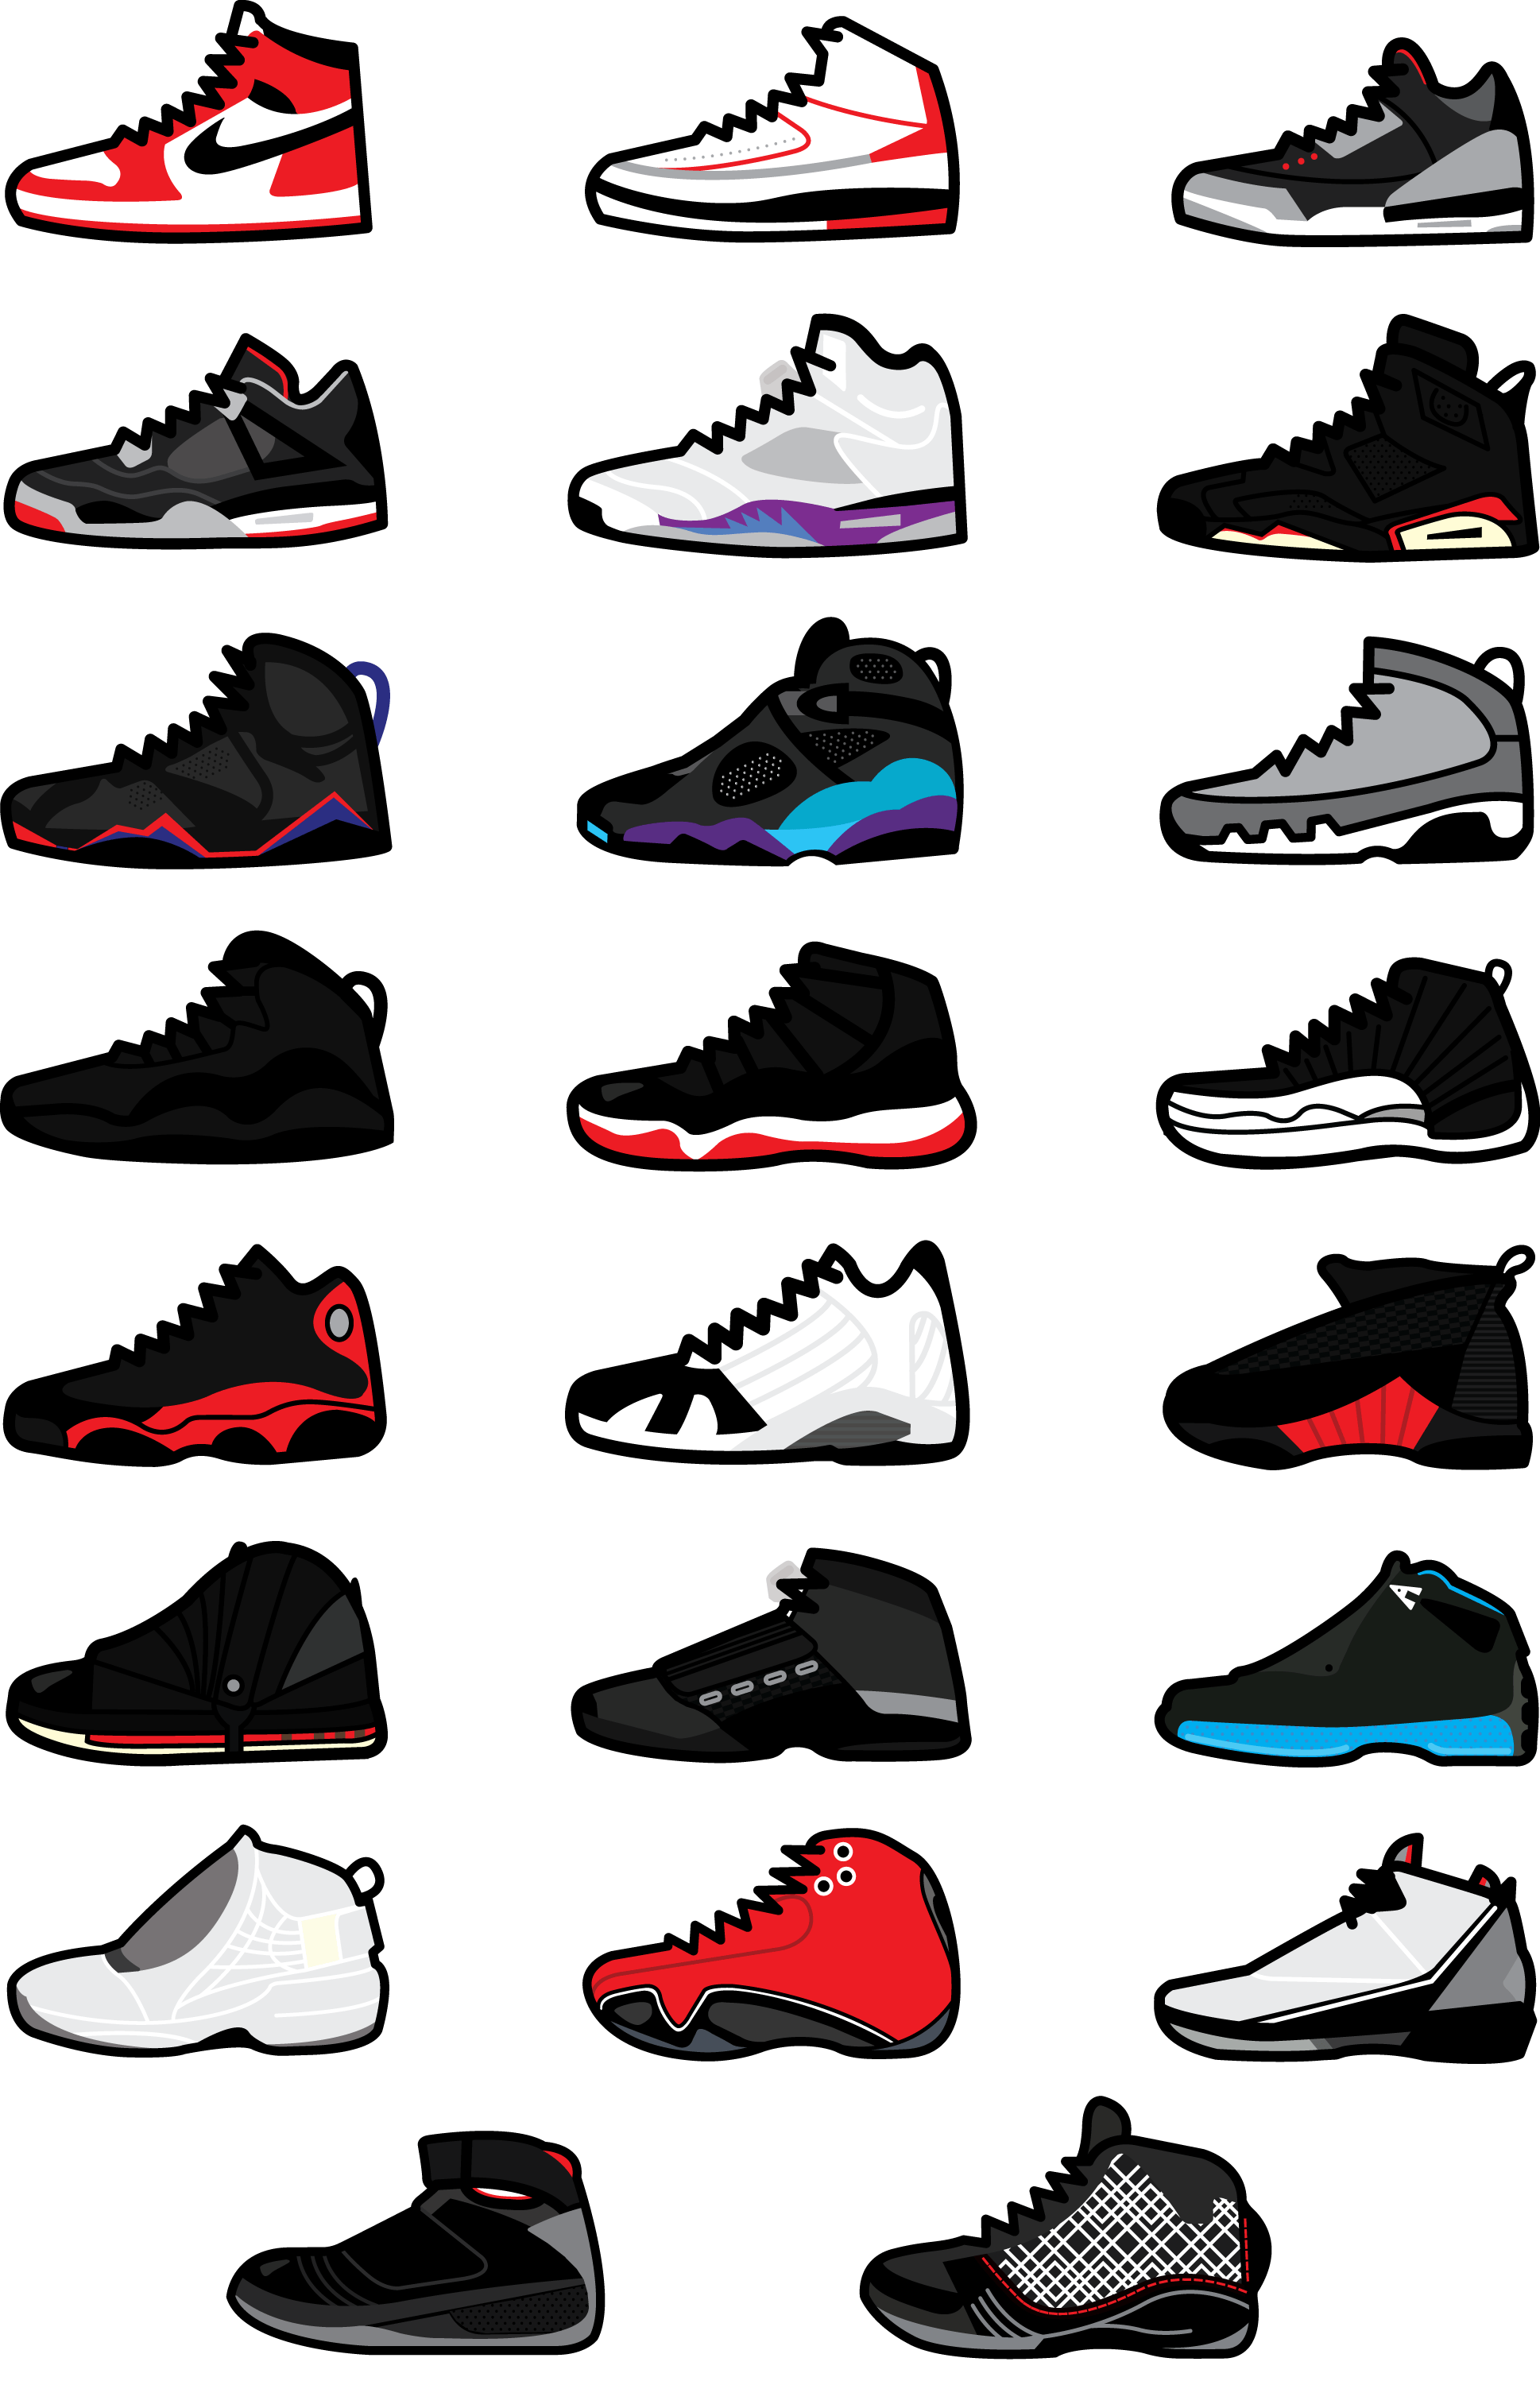 Air Jordan Shoes Wallpapers - Top Free